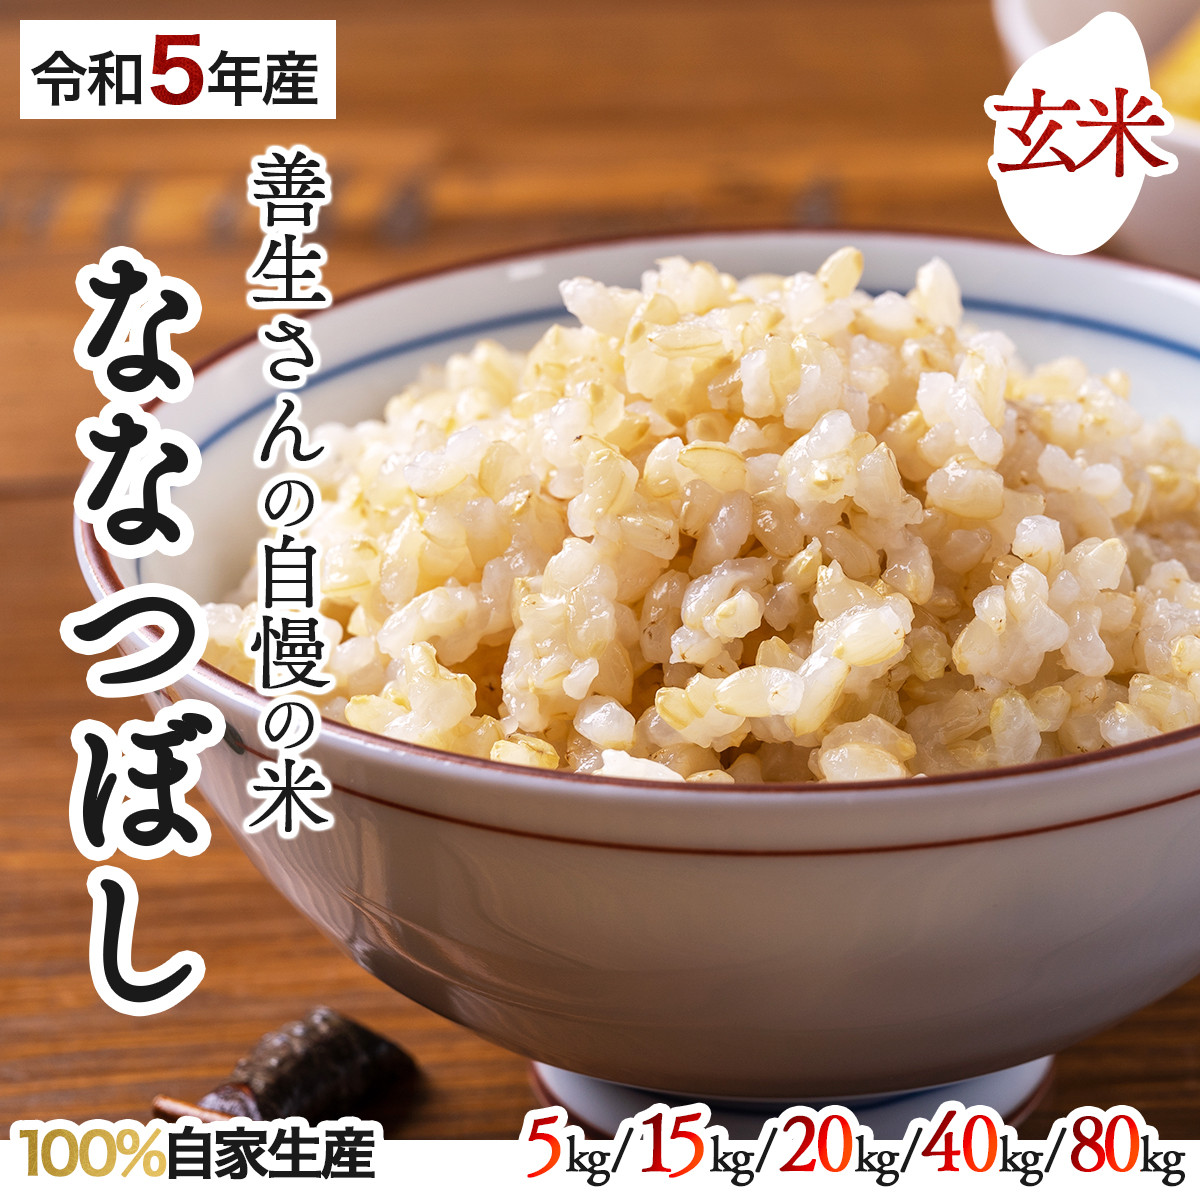 
【量が選べる】『100%自家生産玄米』善生さんの自慢の米 玄米ななつぼし5〜80kg※一括配送
